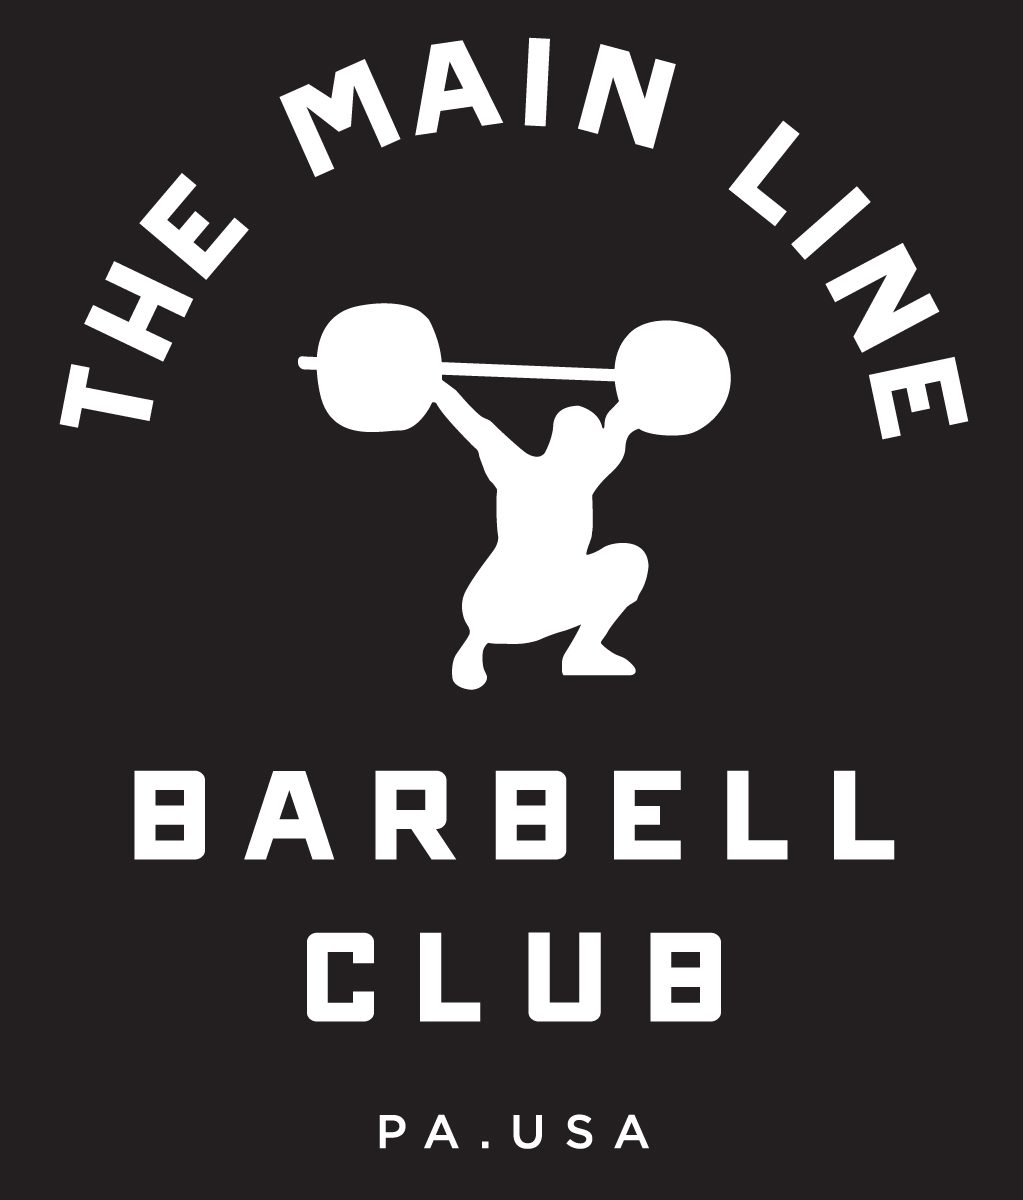 Week of 11.14.16 Barbell Club